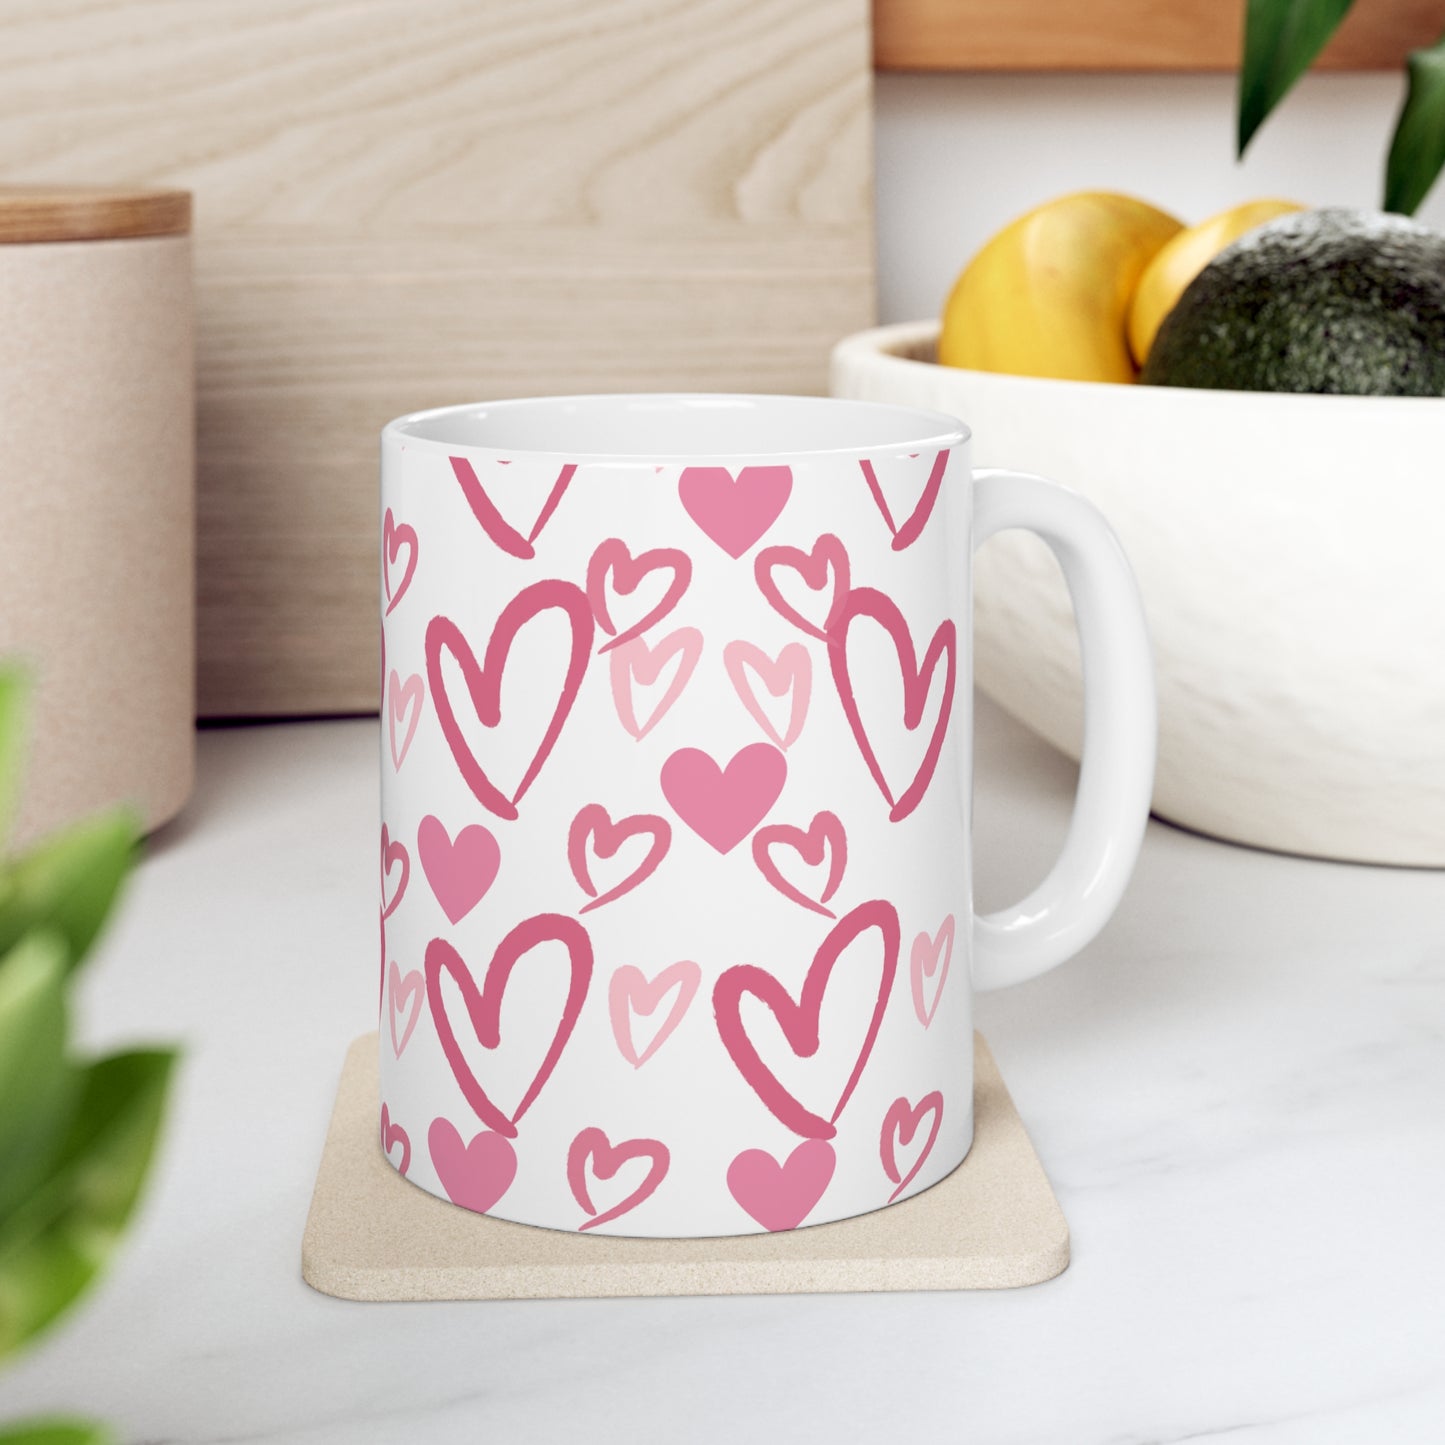 You Have My Heart Ceramic Mug